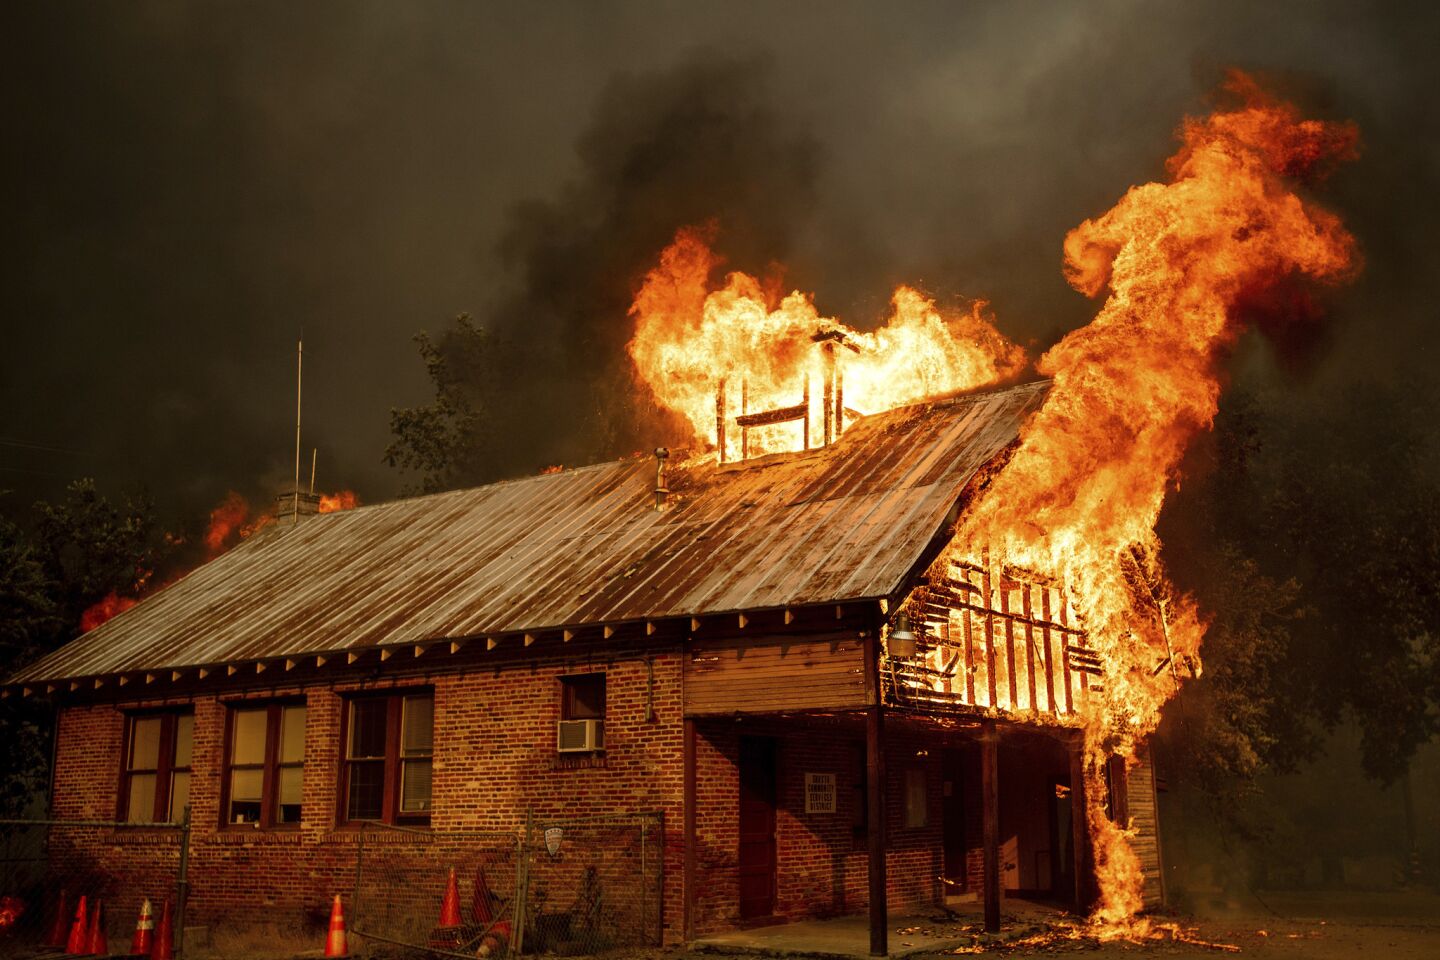 A historic schoolhouse burns as the Carr fire tears through Shasta on July 26.